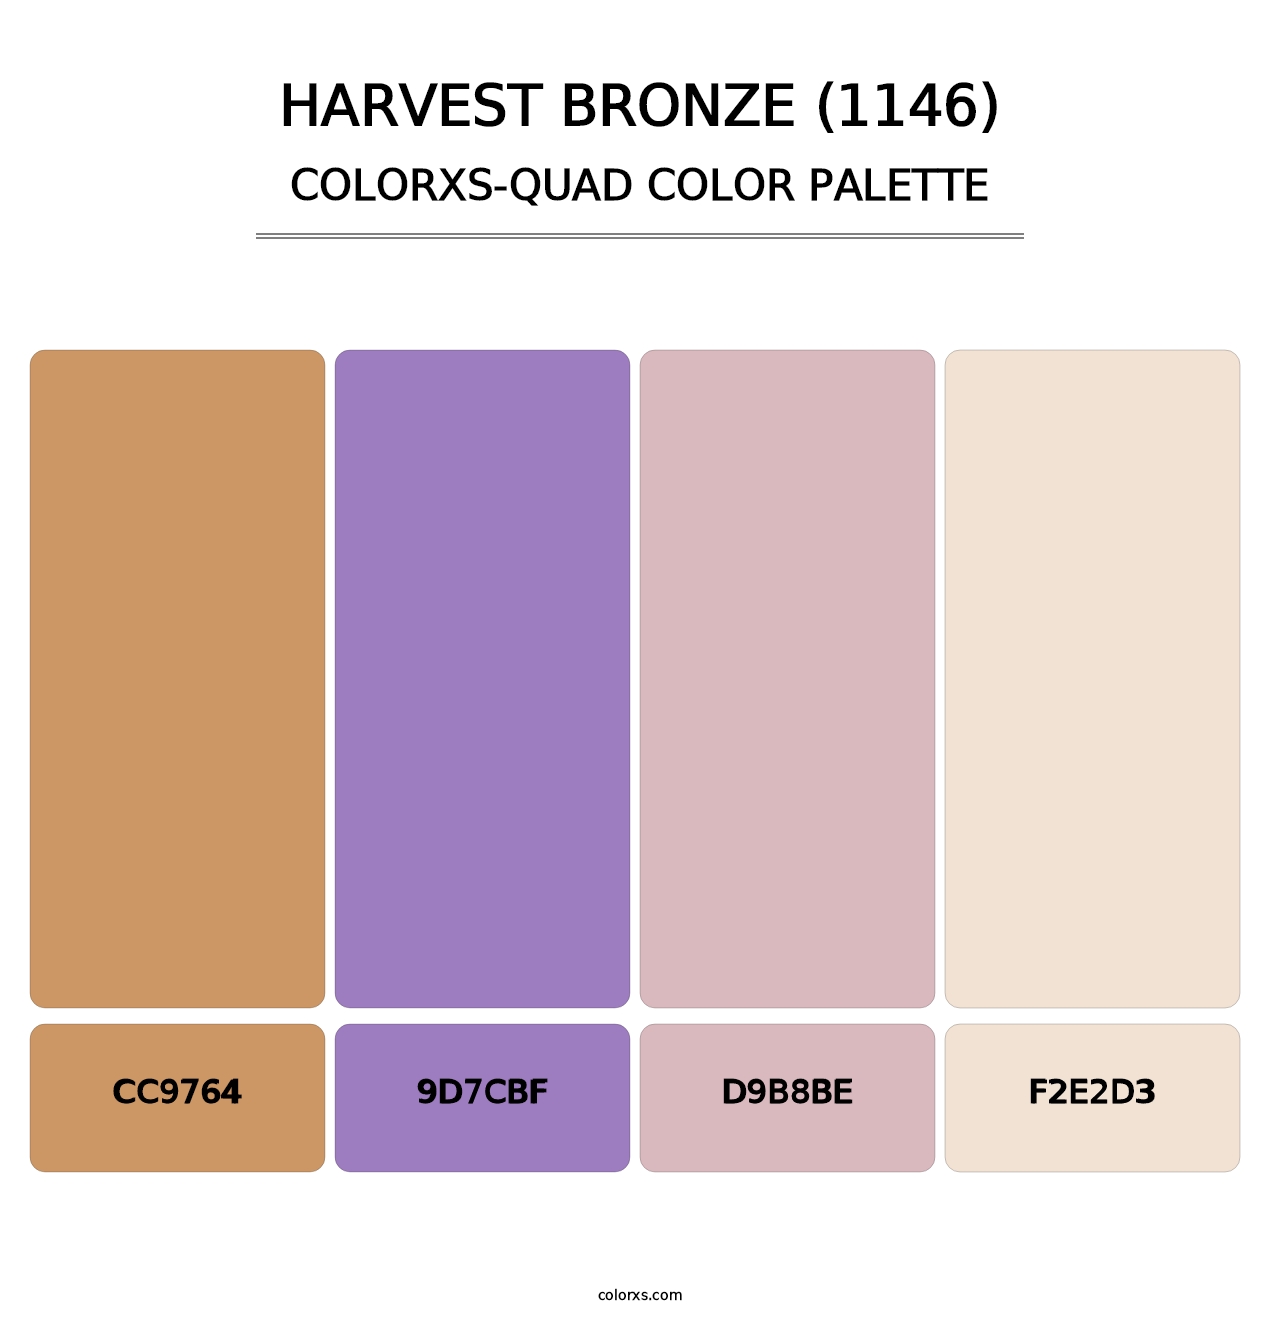 Harvest Bronze (1146) - Colorxs Quad Palette